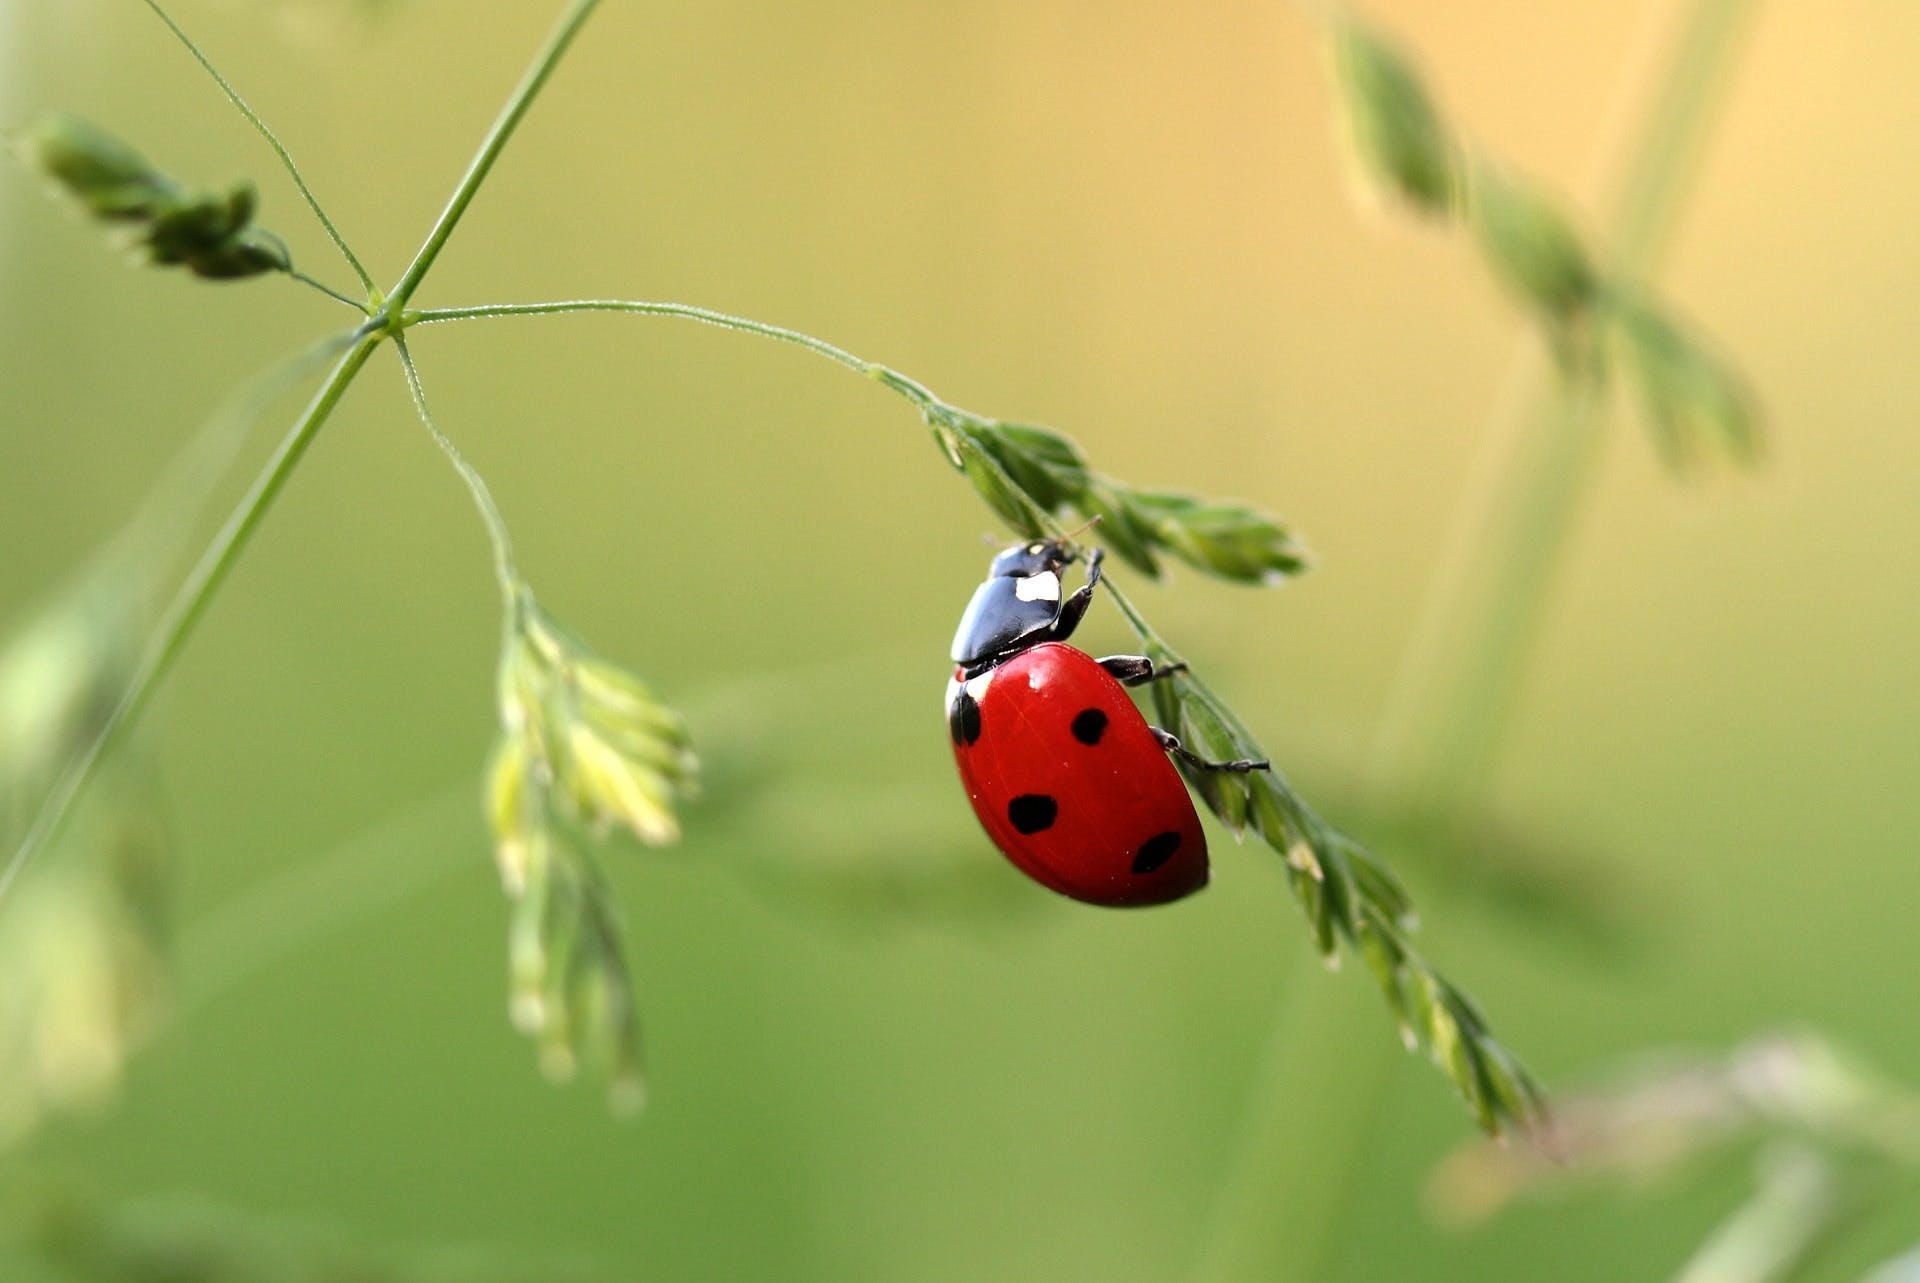 Photo by Pixabay: https://www.pexels.com/photo/close-up-photo-of-ladybug-on-leaf-during-daytime-121472/